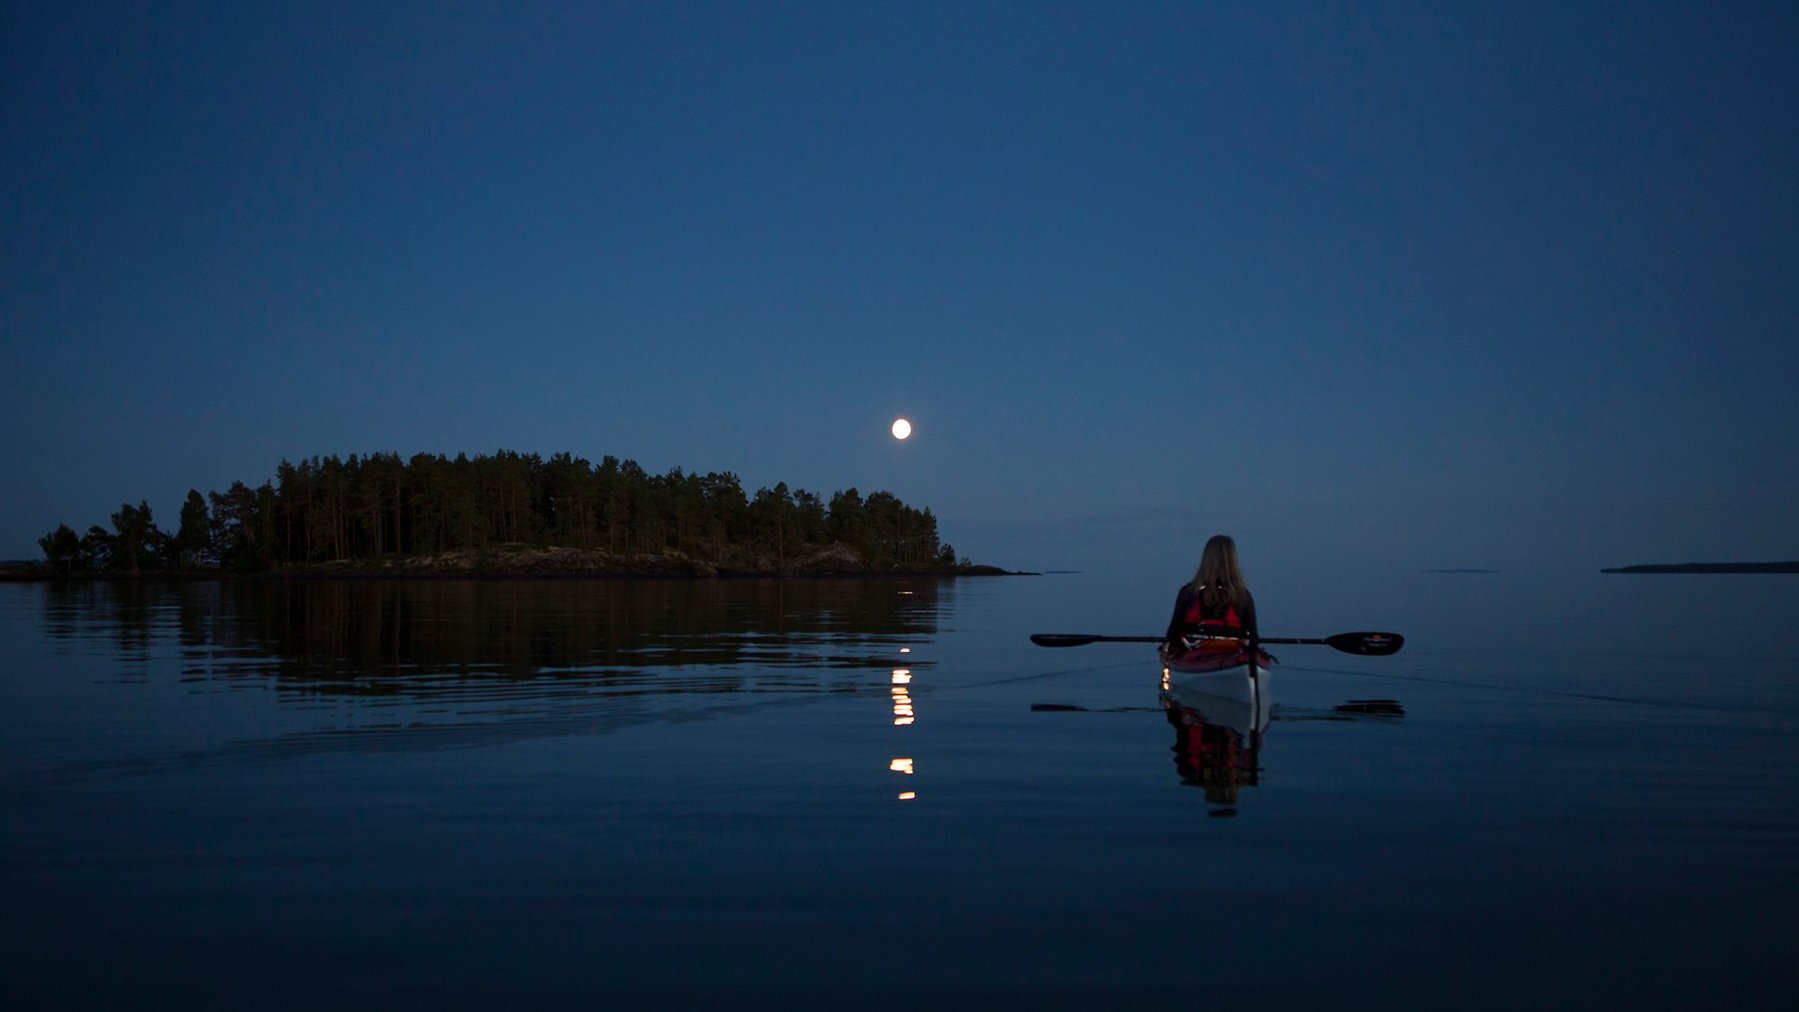 Liten måne speglar i i stilla vatten över en ö. En ensam paddlare i bilden.